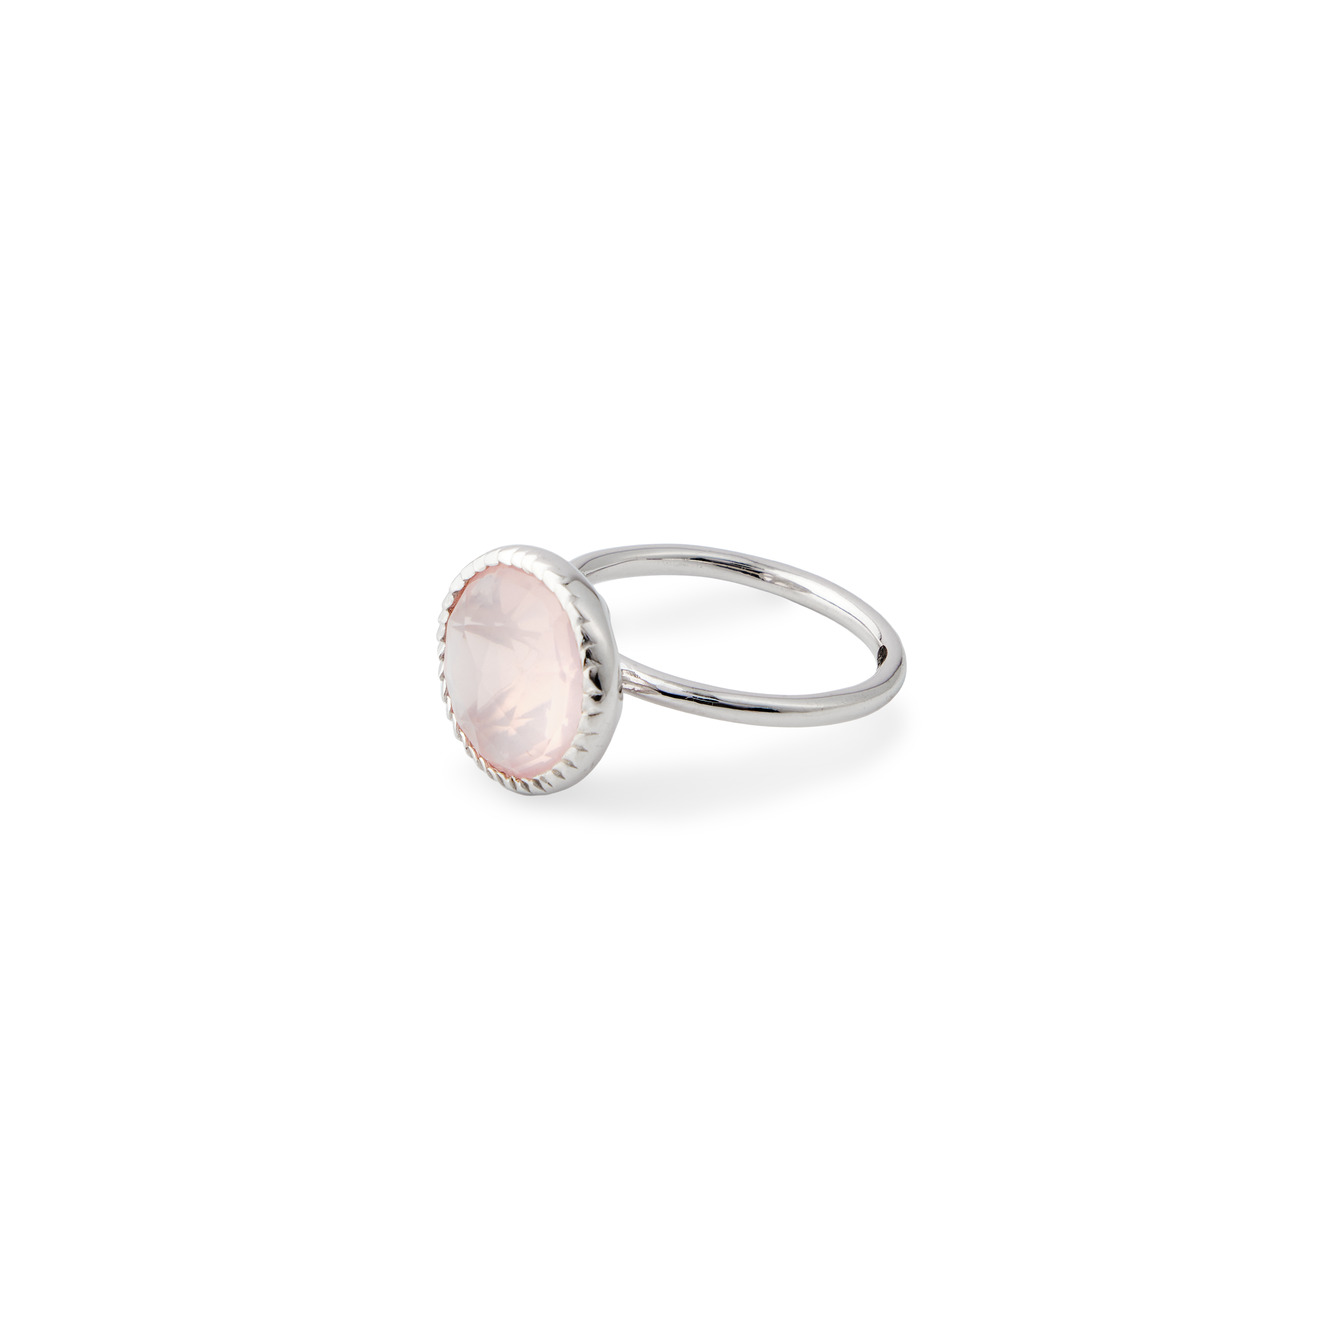 Wisteria Gems Серебряное кольцо тонкое с крупным розовым кварцем wisteria gems позолоченные серьги из серебра из трех частей с лимонным кварцем топазом и розовым кварцем